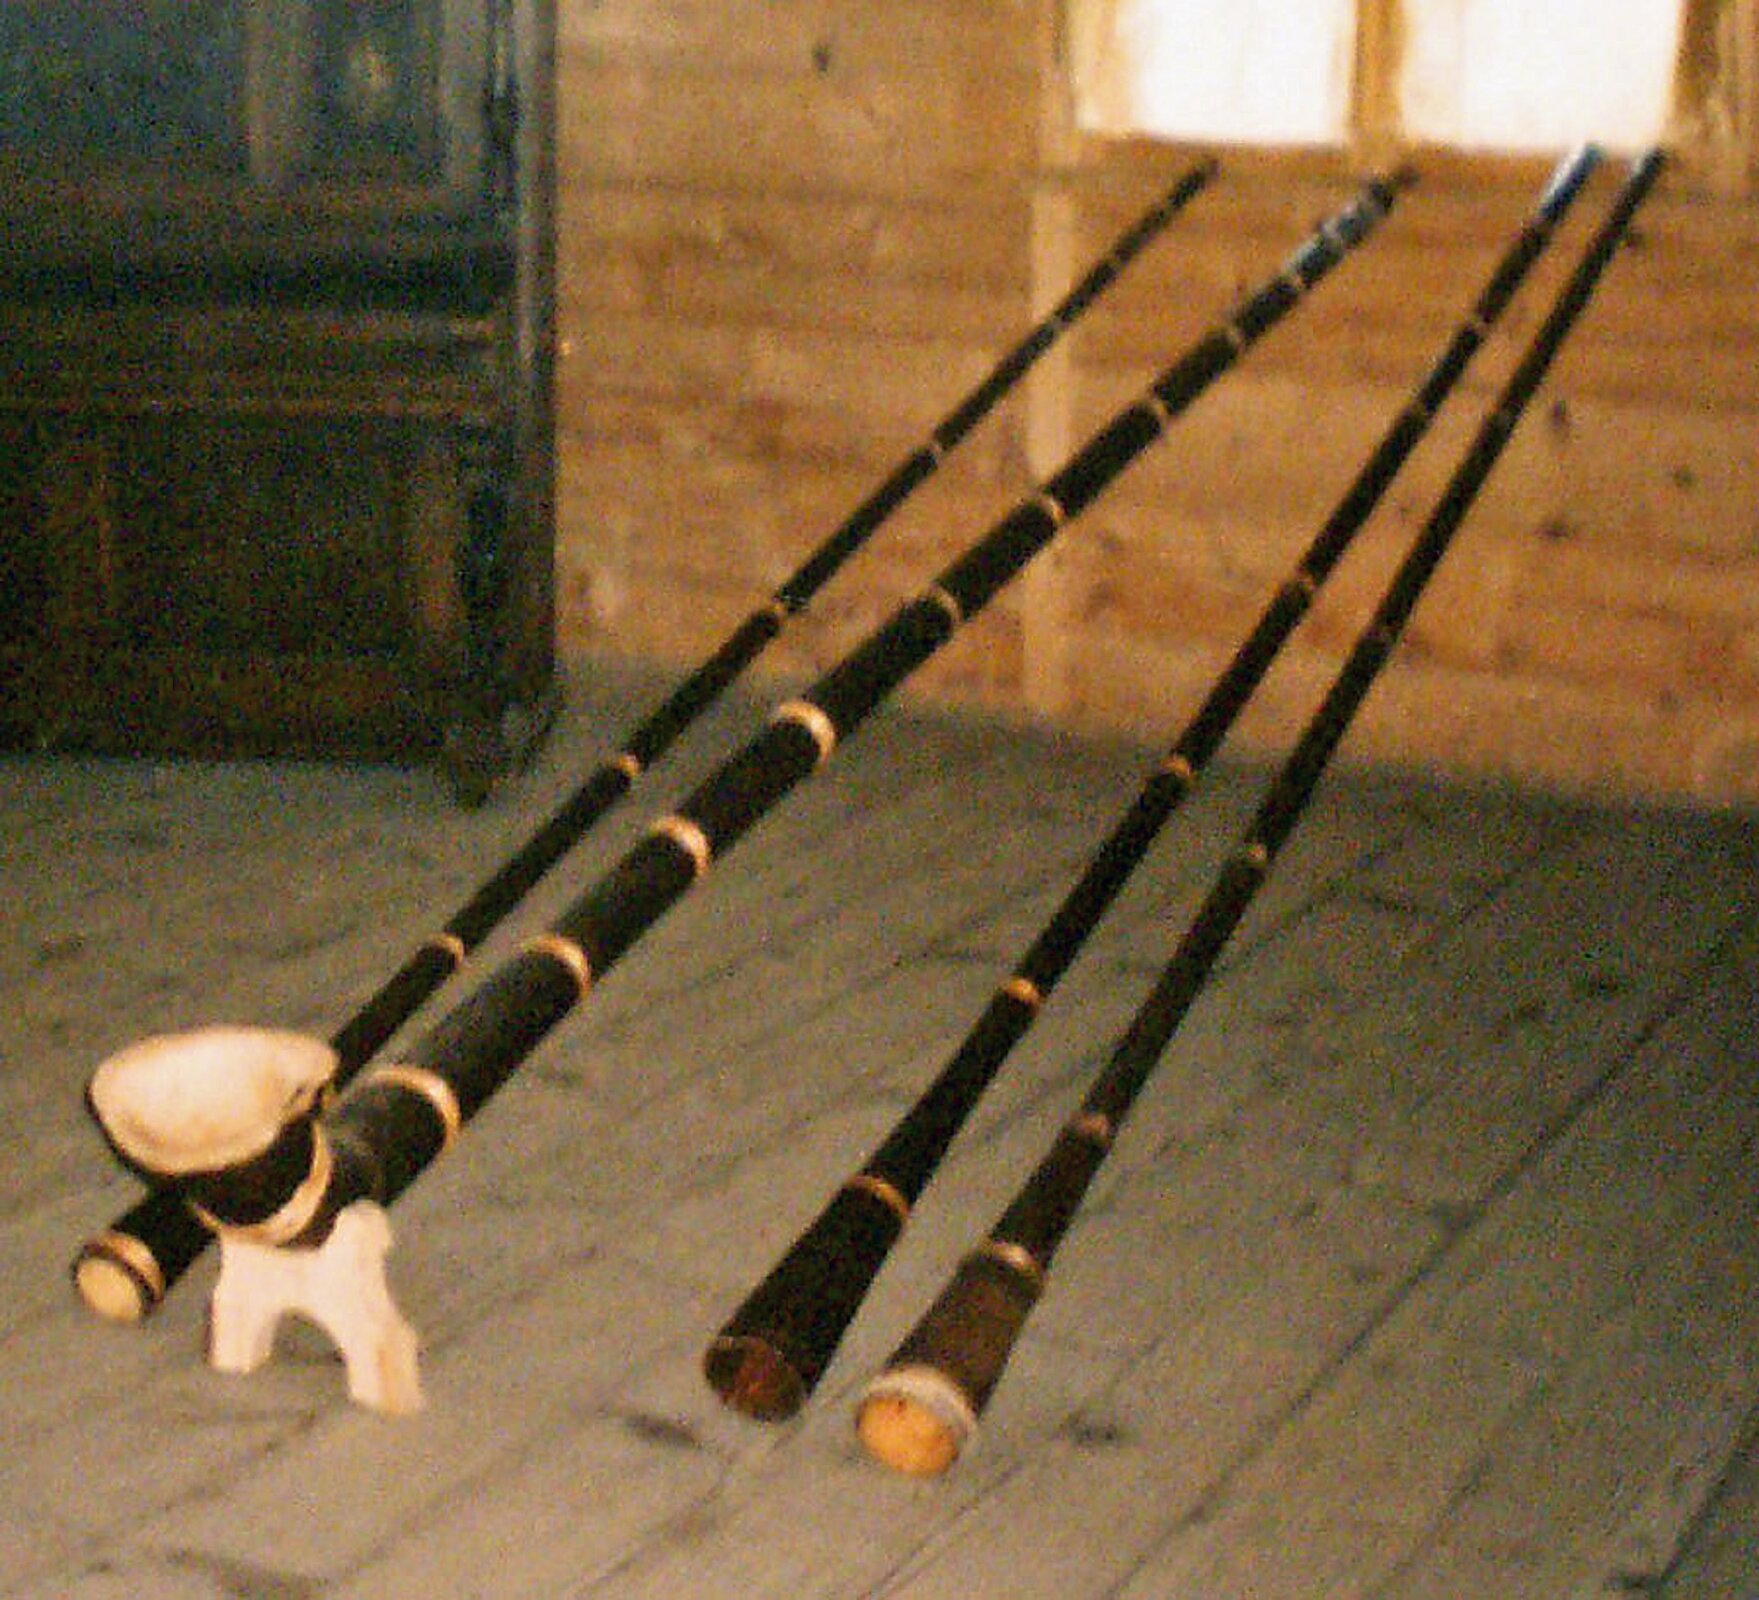 Na zdjęciu przedstawione zostały trombity. Ludowy instrument dęty w kształcie prostej rury lub zagiętej nieco na końcu, sięgającej do 4 metrów długości używany jako pasterska trąba wydająca głęboki, niski dźwięk.